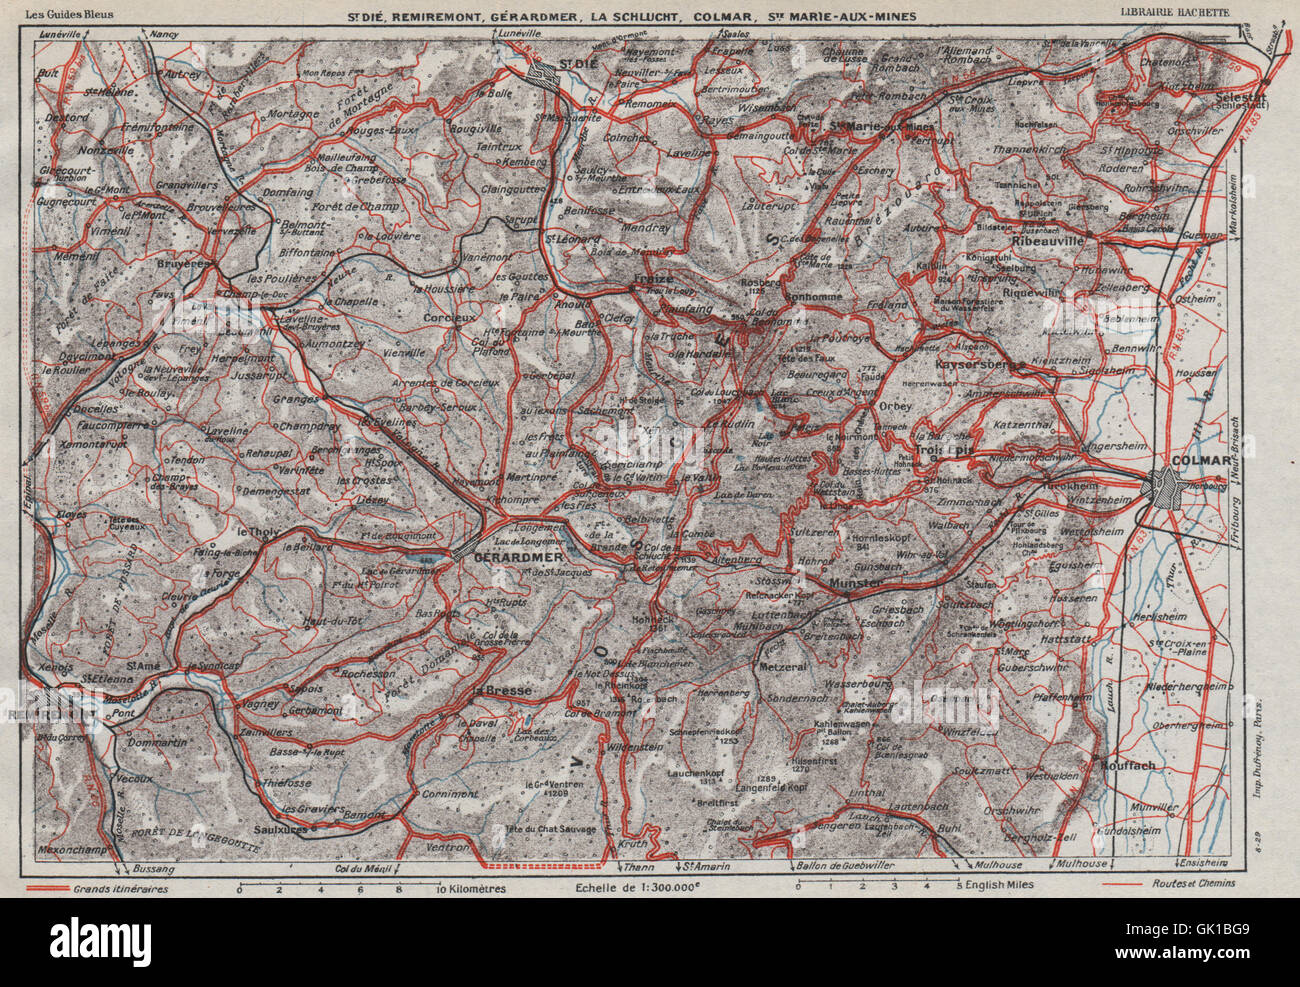 VOSGES.St Dié Remiremont Gérardmer la Schlucht Colmar.Haut-Rhin.Alsace, 1930 map Banque D'Images